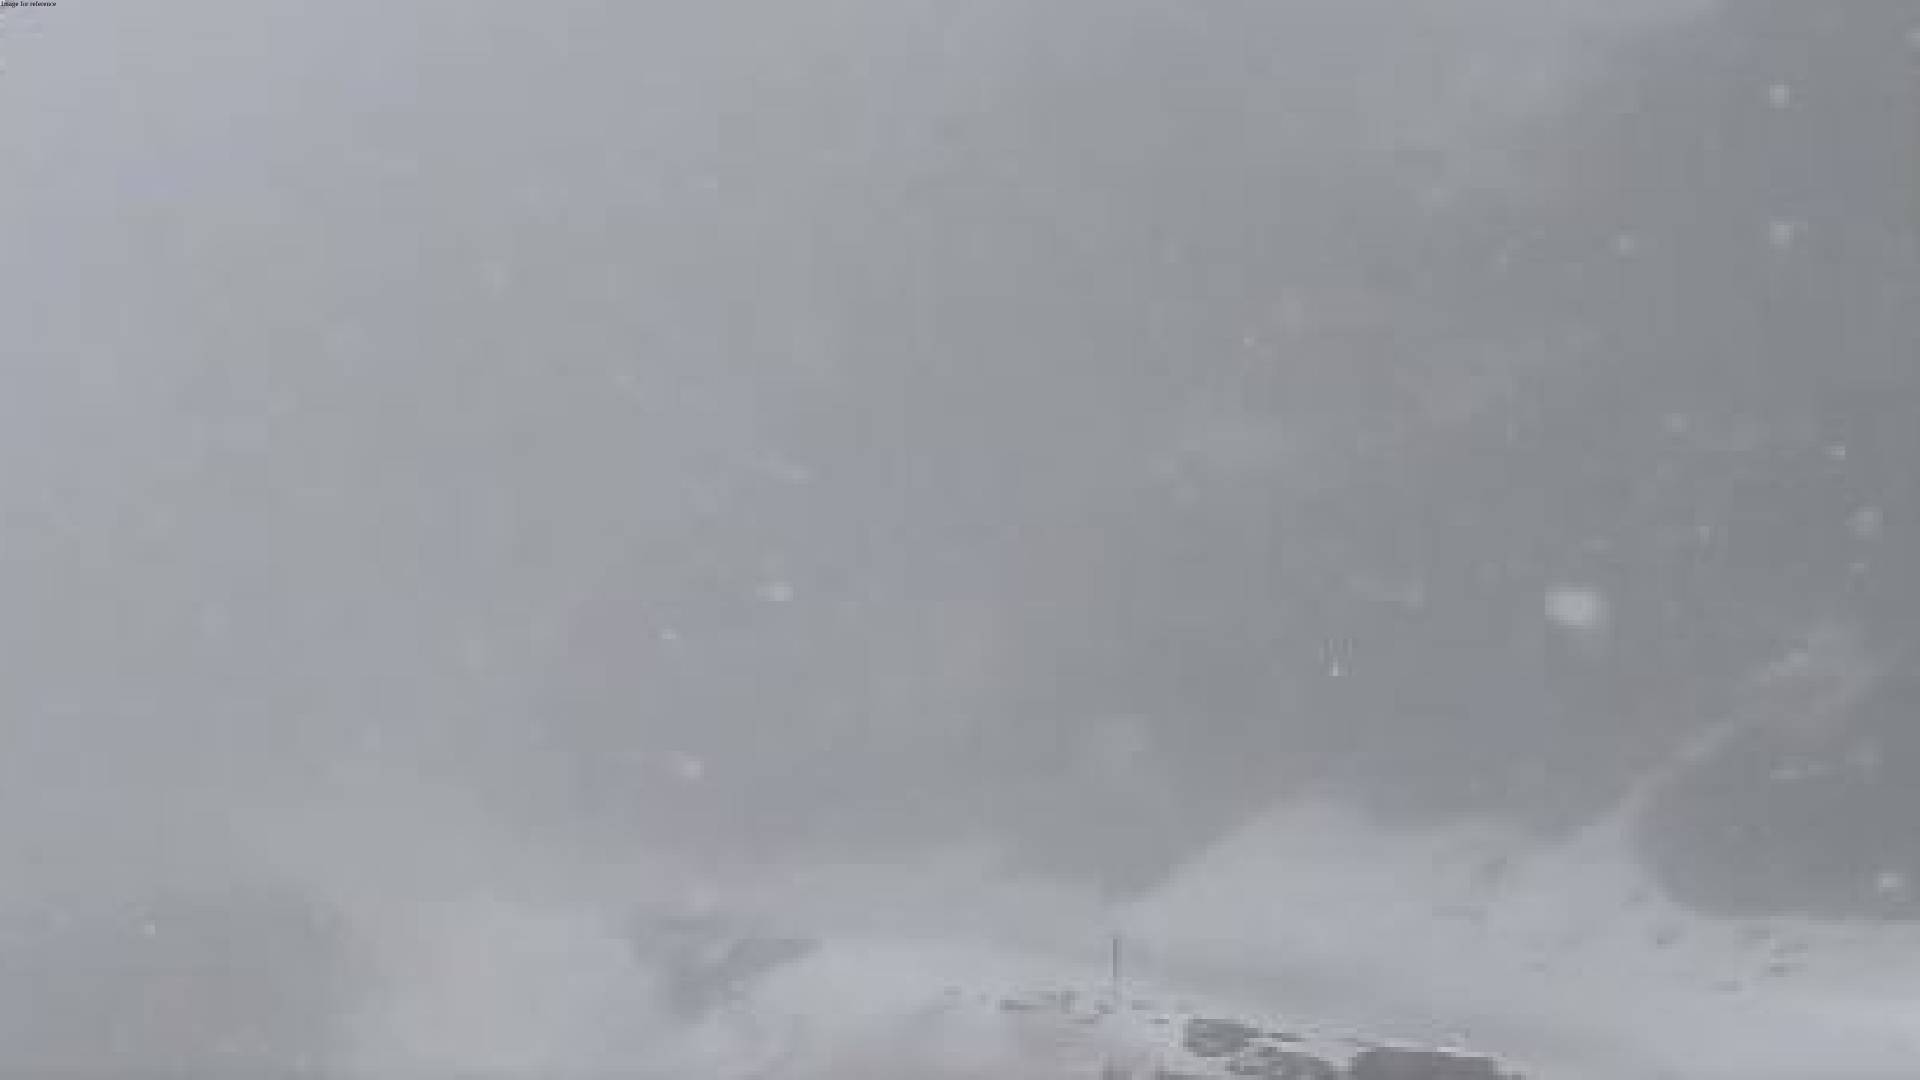 Srinagar-Leh Highway closed following fresh snowfall